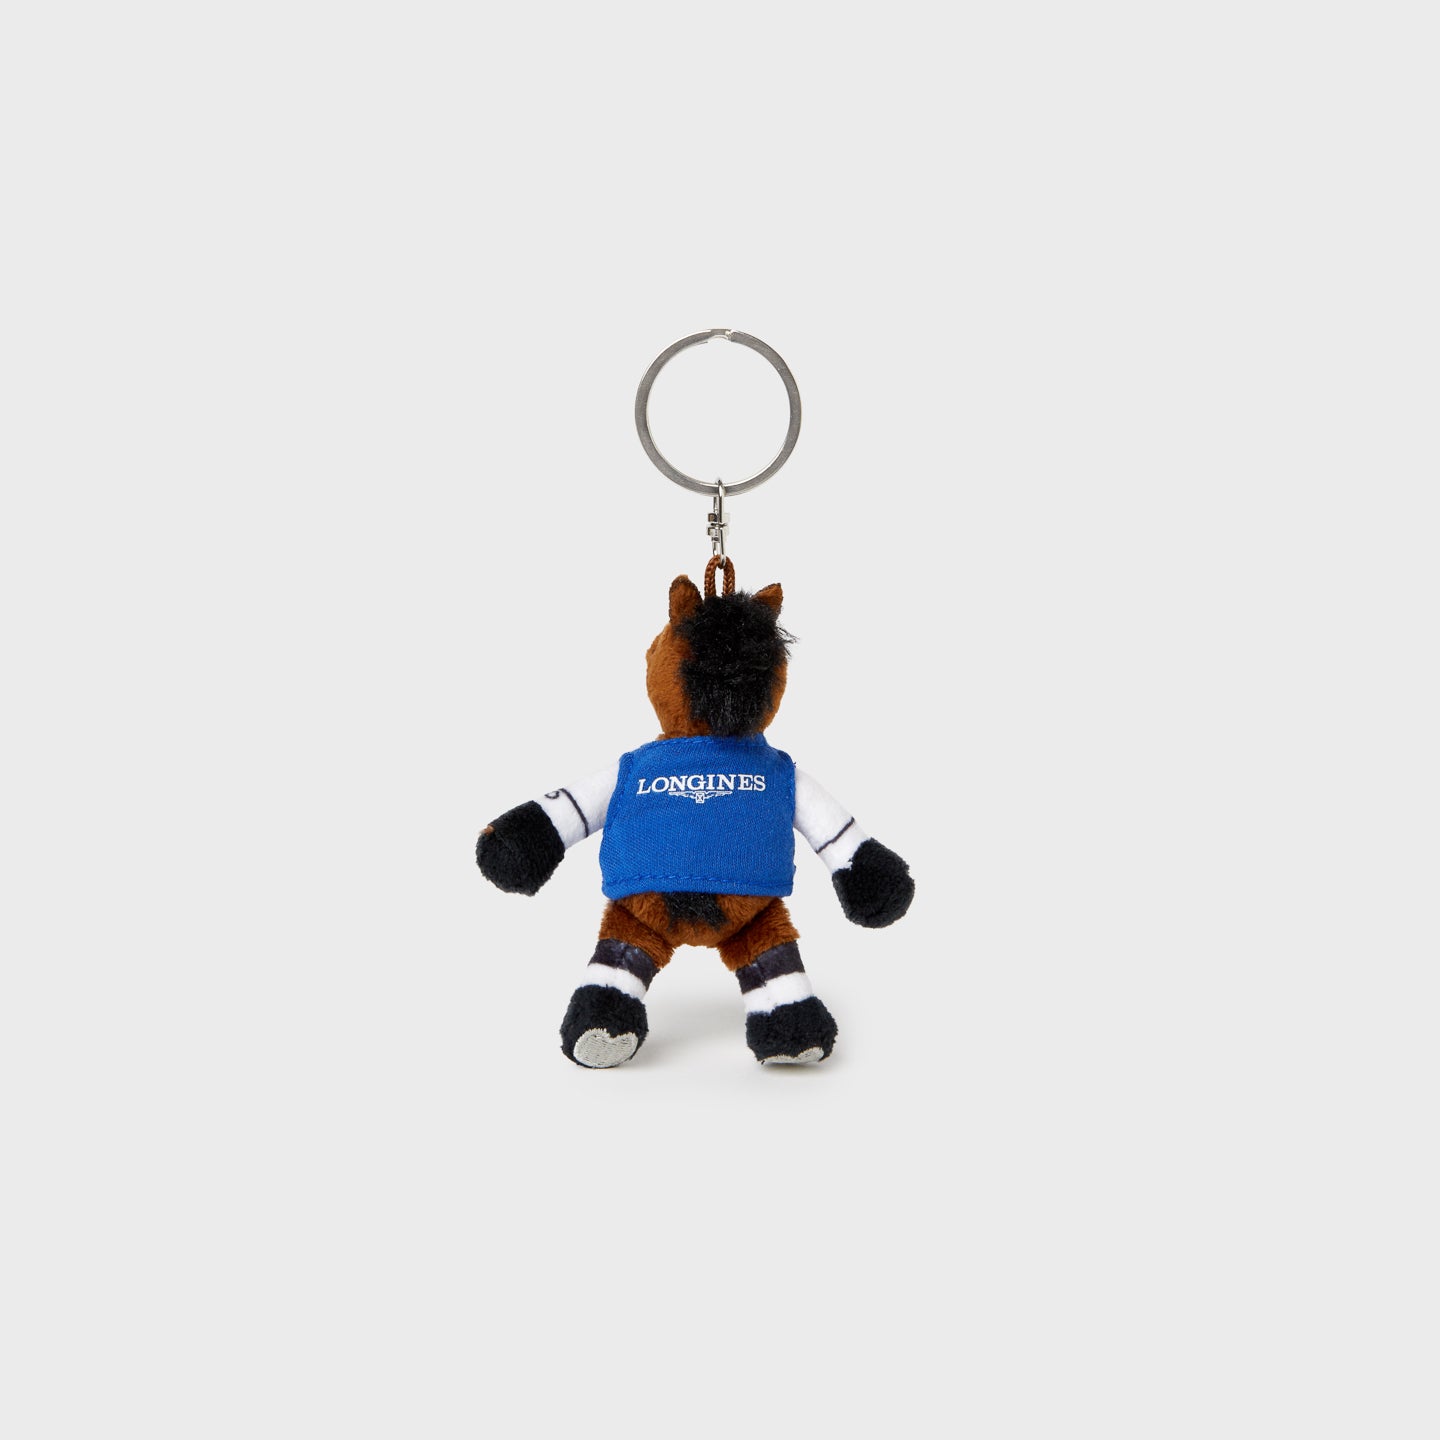 LGCT Mascot Plush Toy Key Ring - Sammy